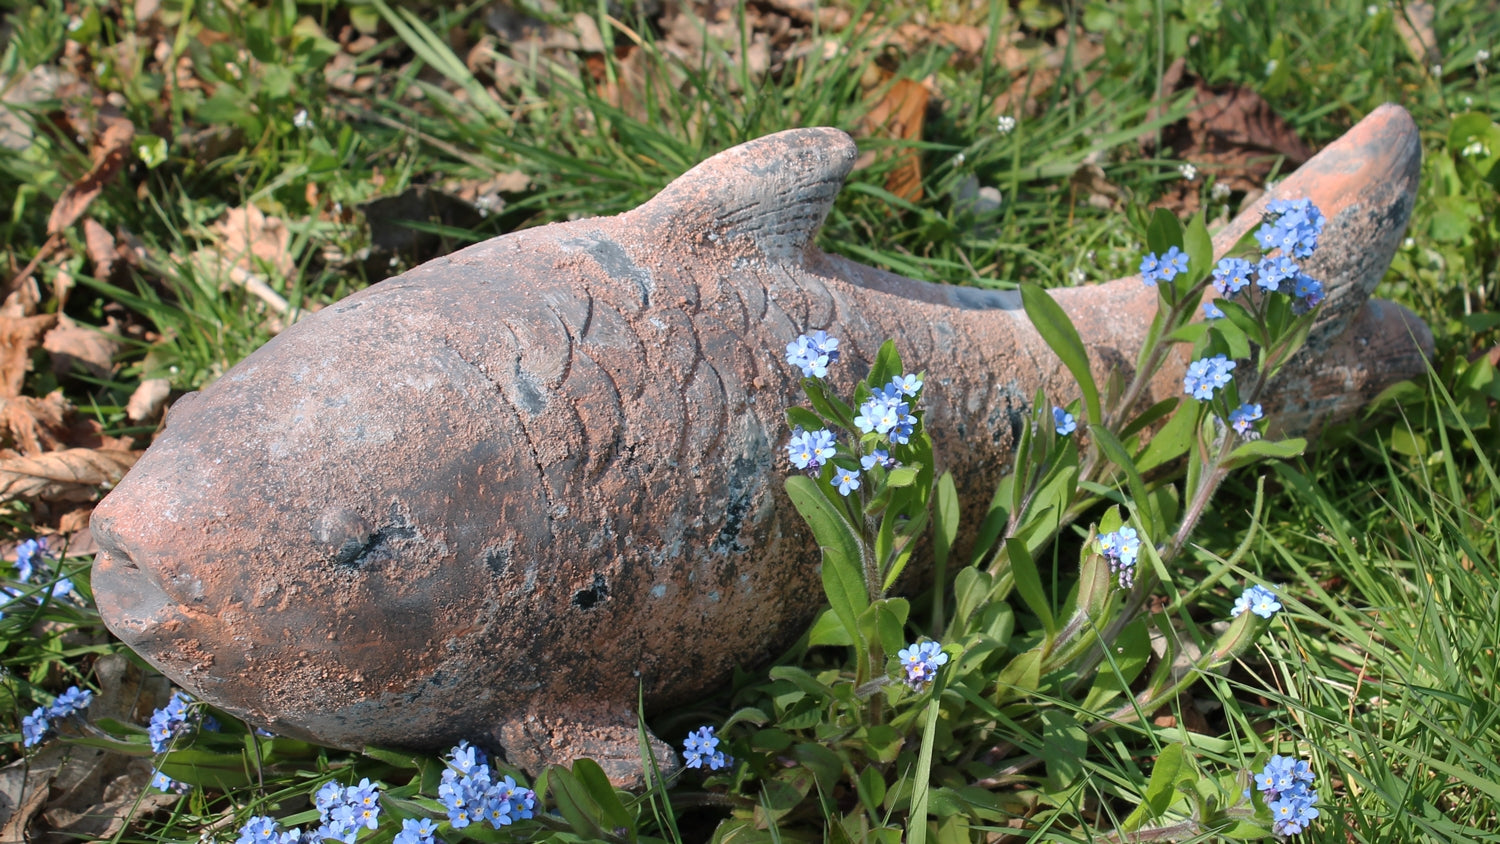 Dekofigur Fisch Figur in Steinoptik Teichdeko Fischfigur für Gartenteich